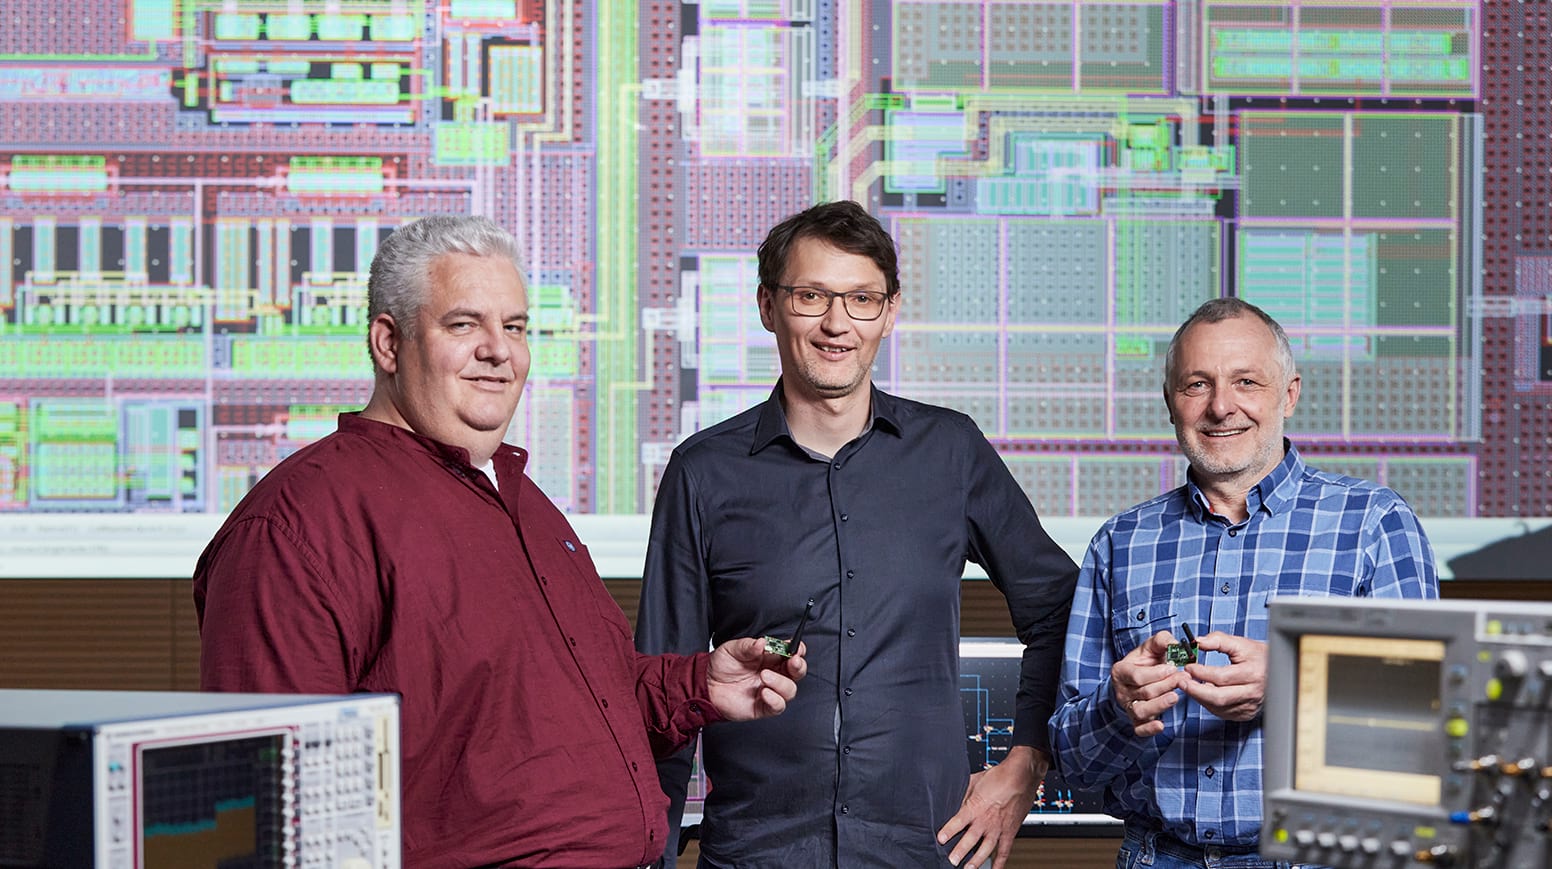 Die Gewinner des Joseph-von-Fraunhofer-Preises 2022 für den energiesparenden RFicient®-Chip: Dr. Heinrich Milosiu, Dr. Markus Eppel und Dr. Frank Oehler (v.l.n.r).